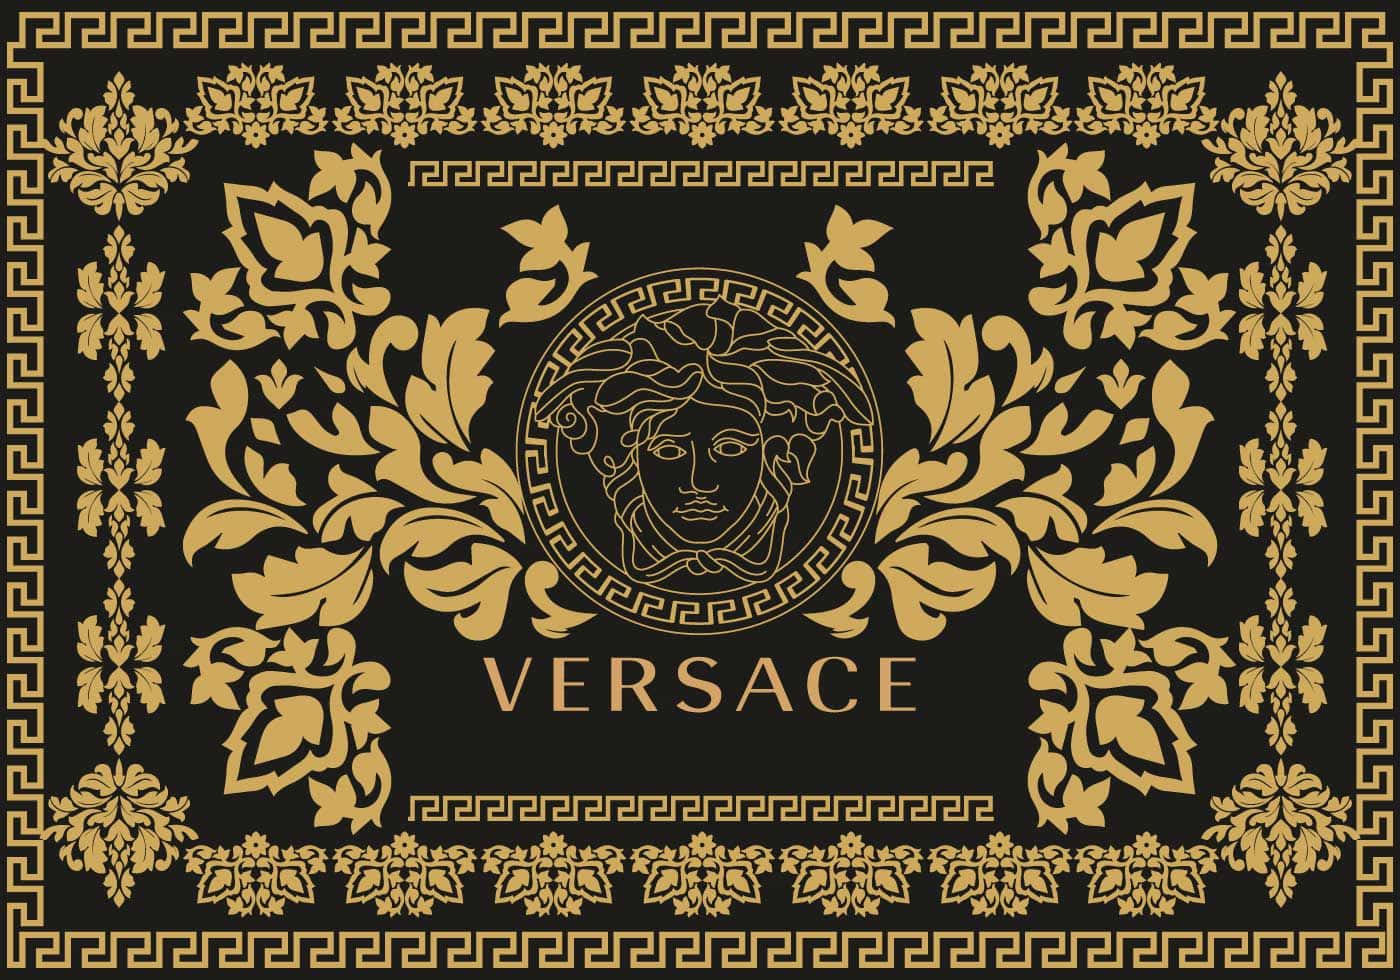 Possiedila Notte Con L'iconico Logo Versace